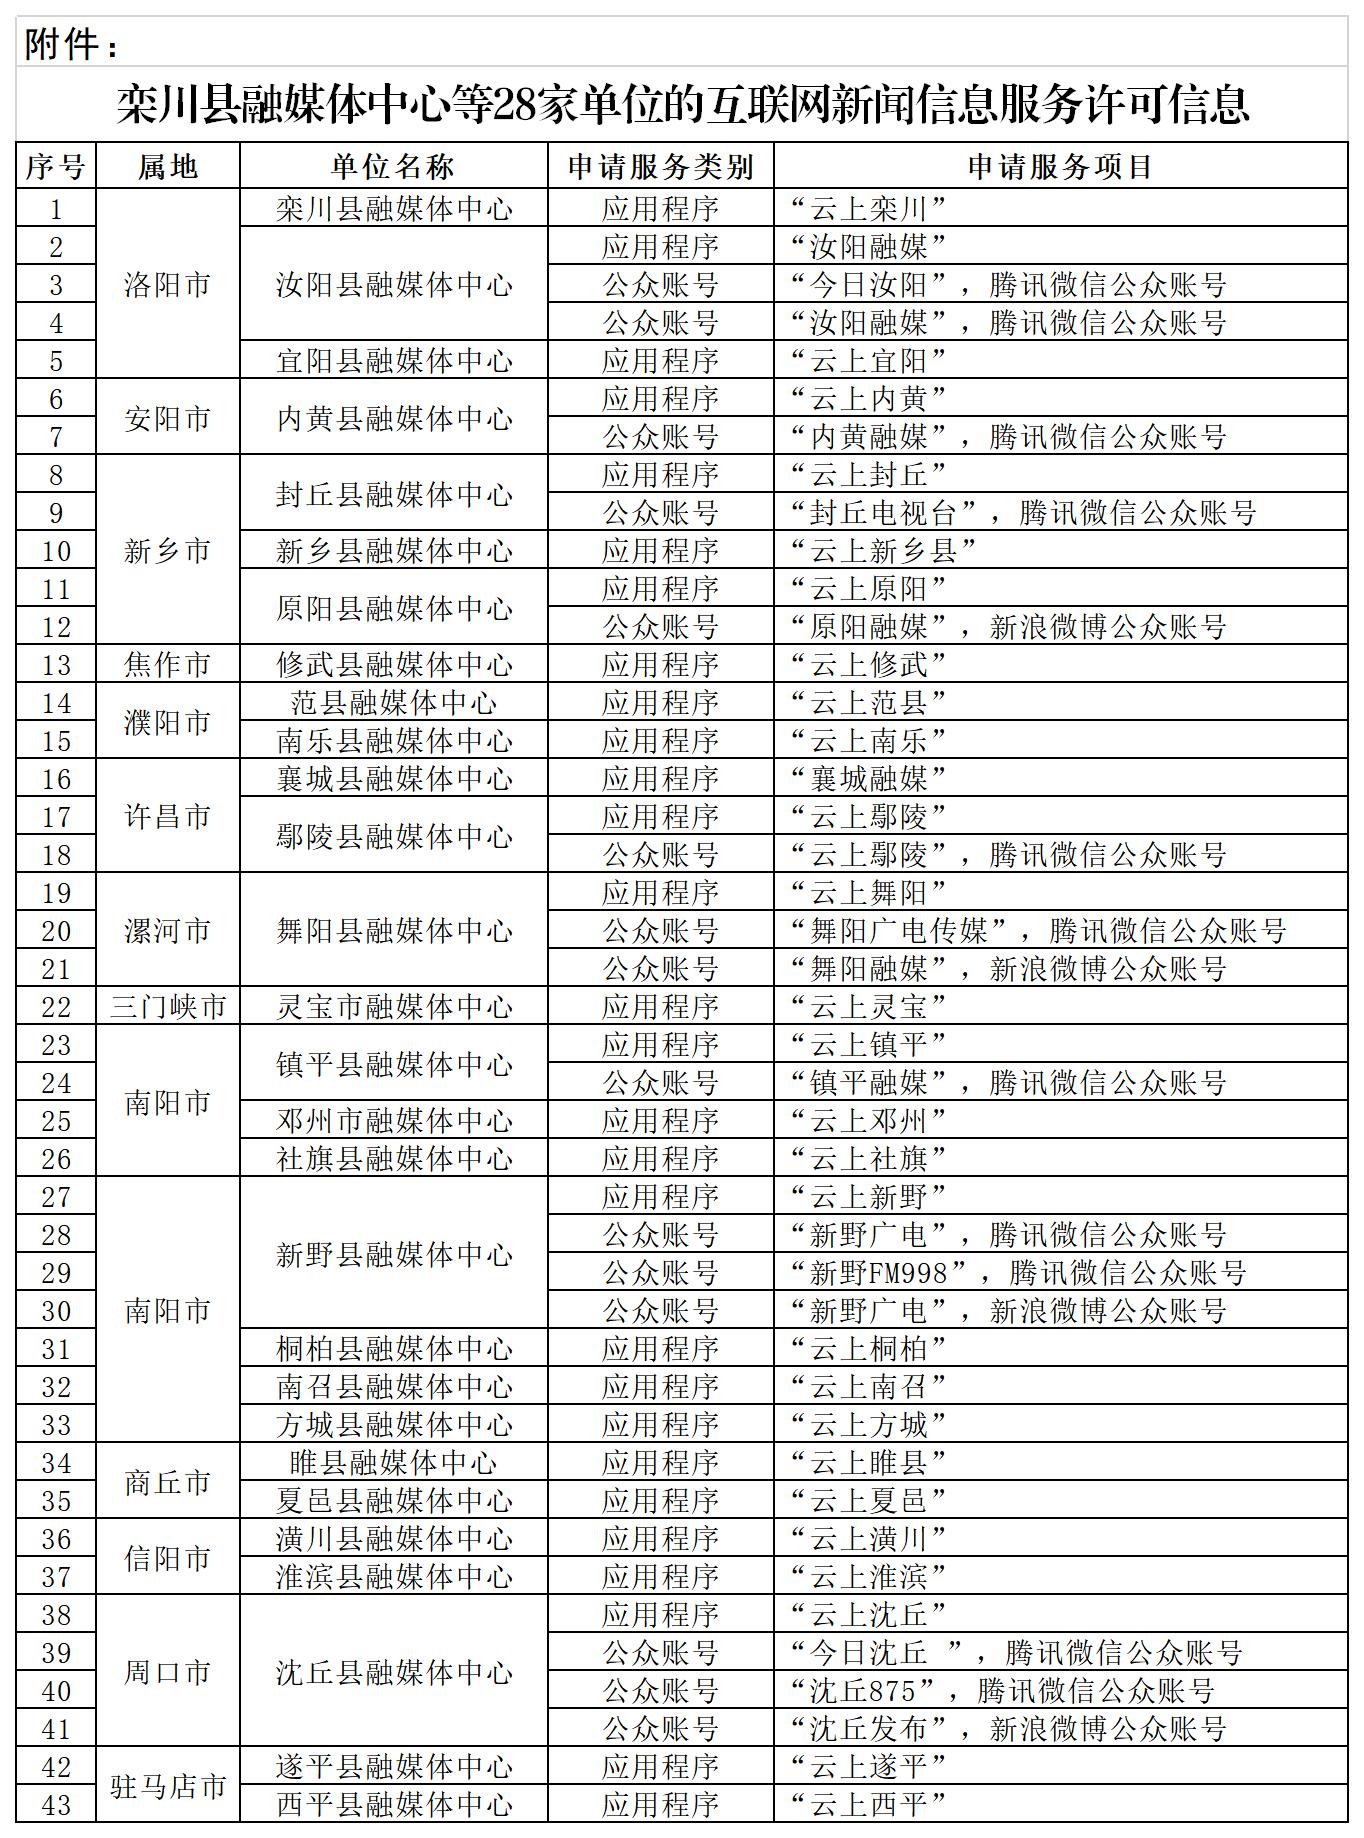 公示附件：栾川县融媒体中心等28家单位的互联网新闻信息服务许可信息.jpg